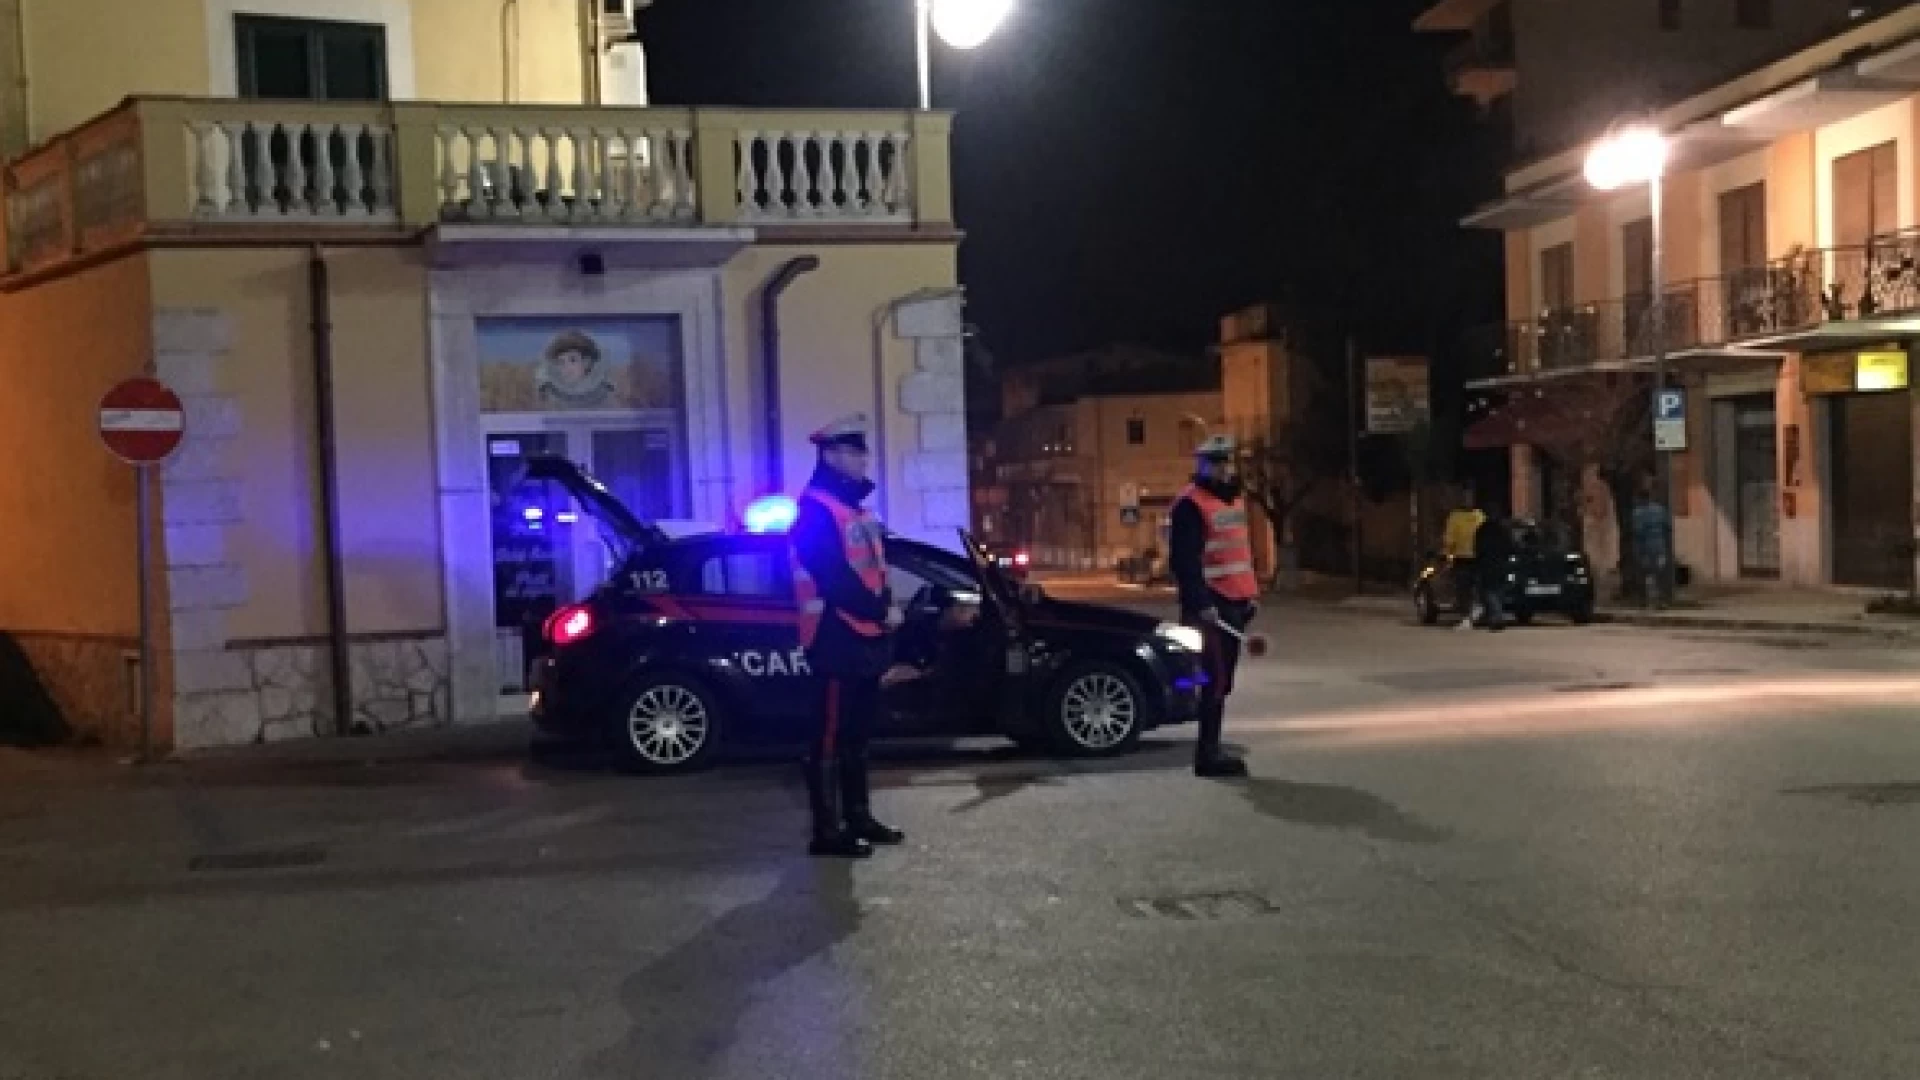 Isernia: Carabinieri in azione per una “Pasqua sicura”, eseguiti controlli, denunce e sequestri.